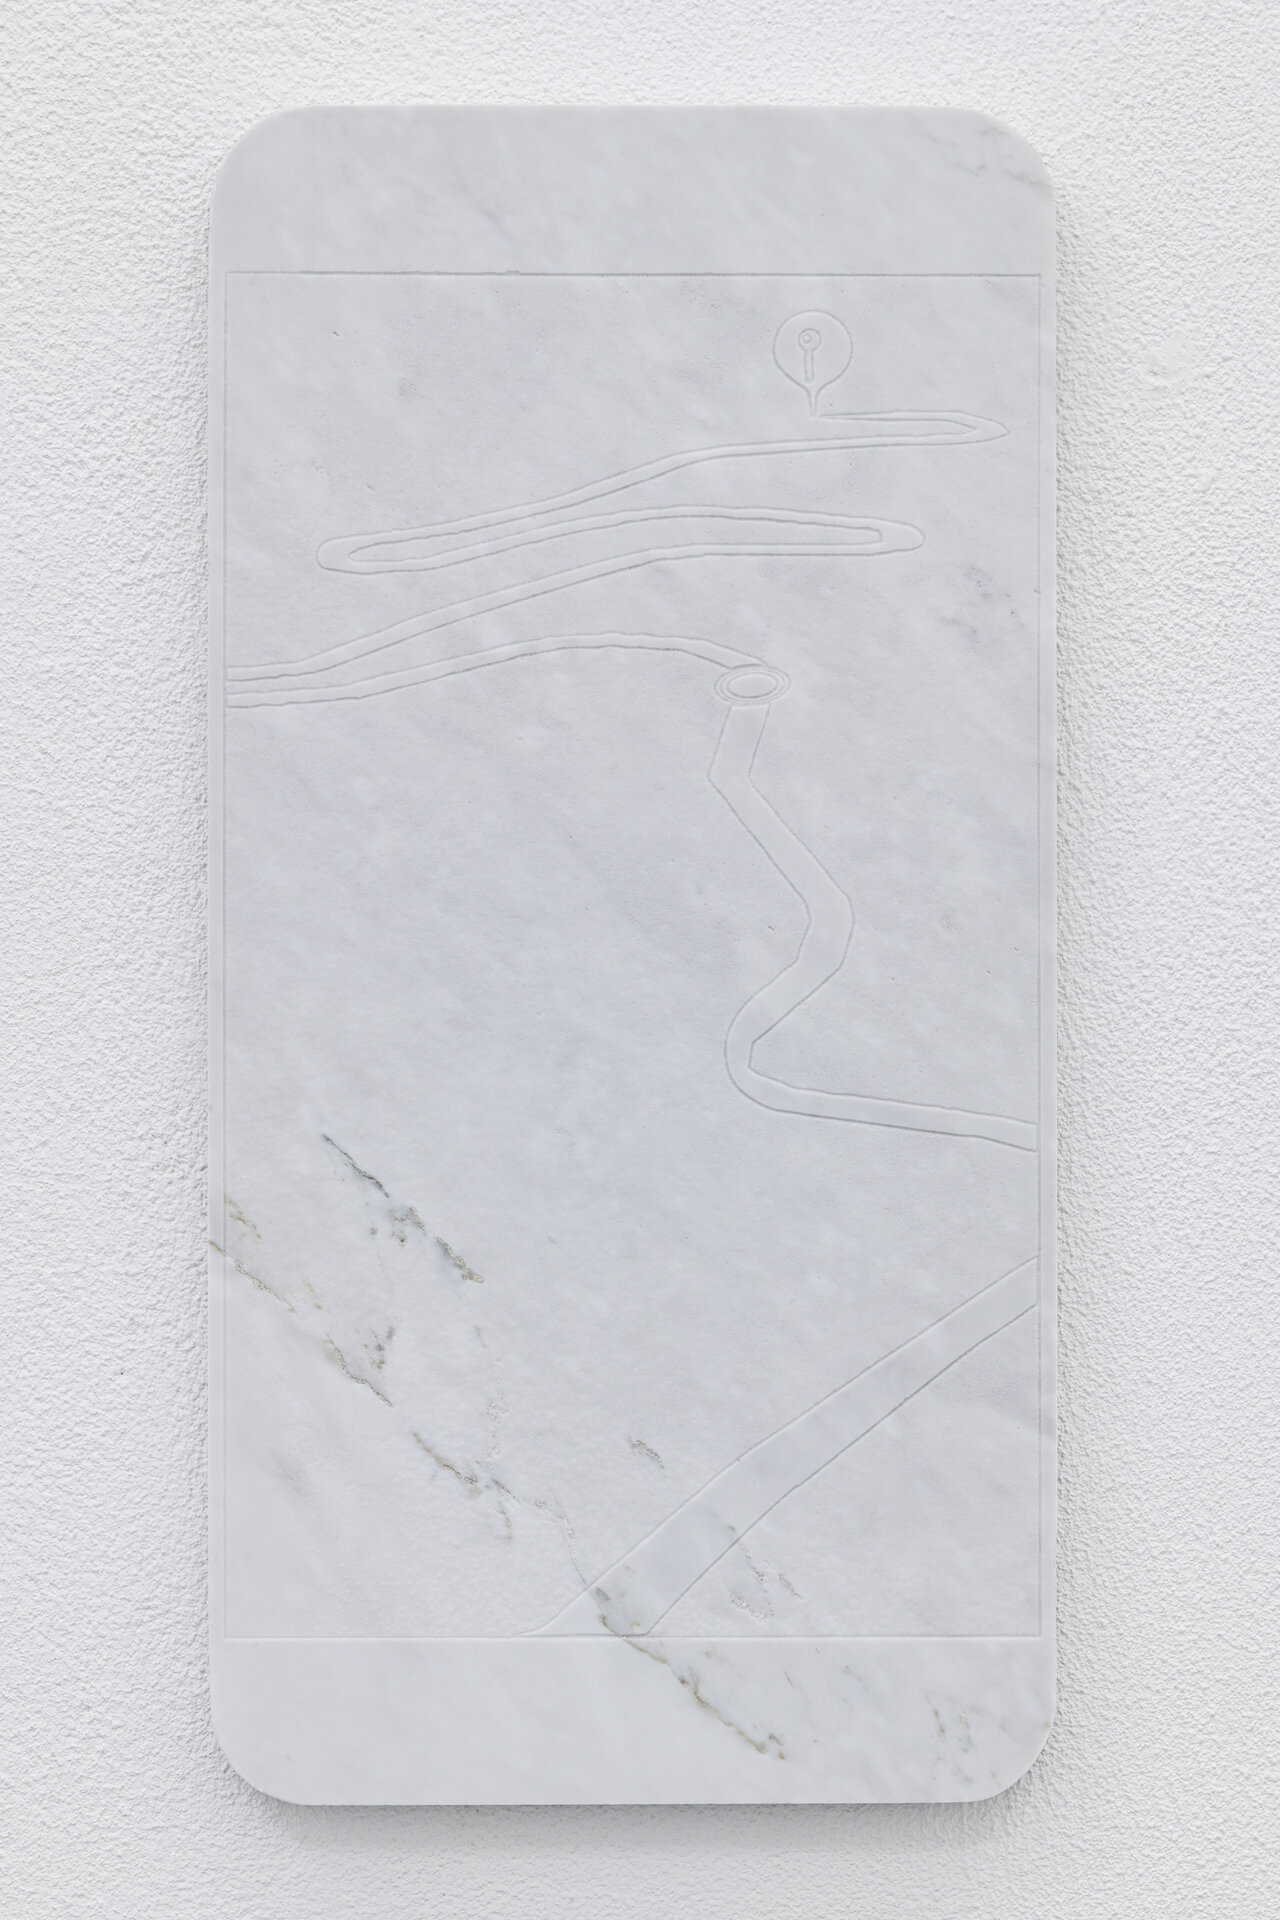 Lukas Liese marmor Relief on route zeitgenössische kunst.jpg